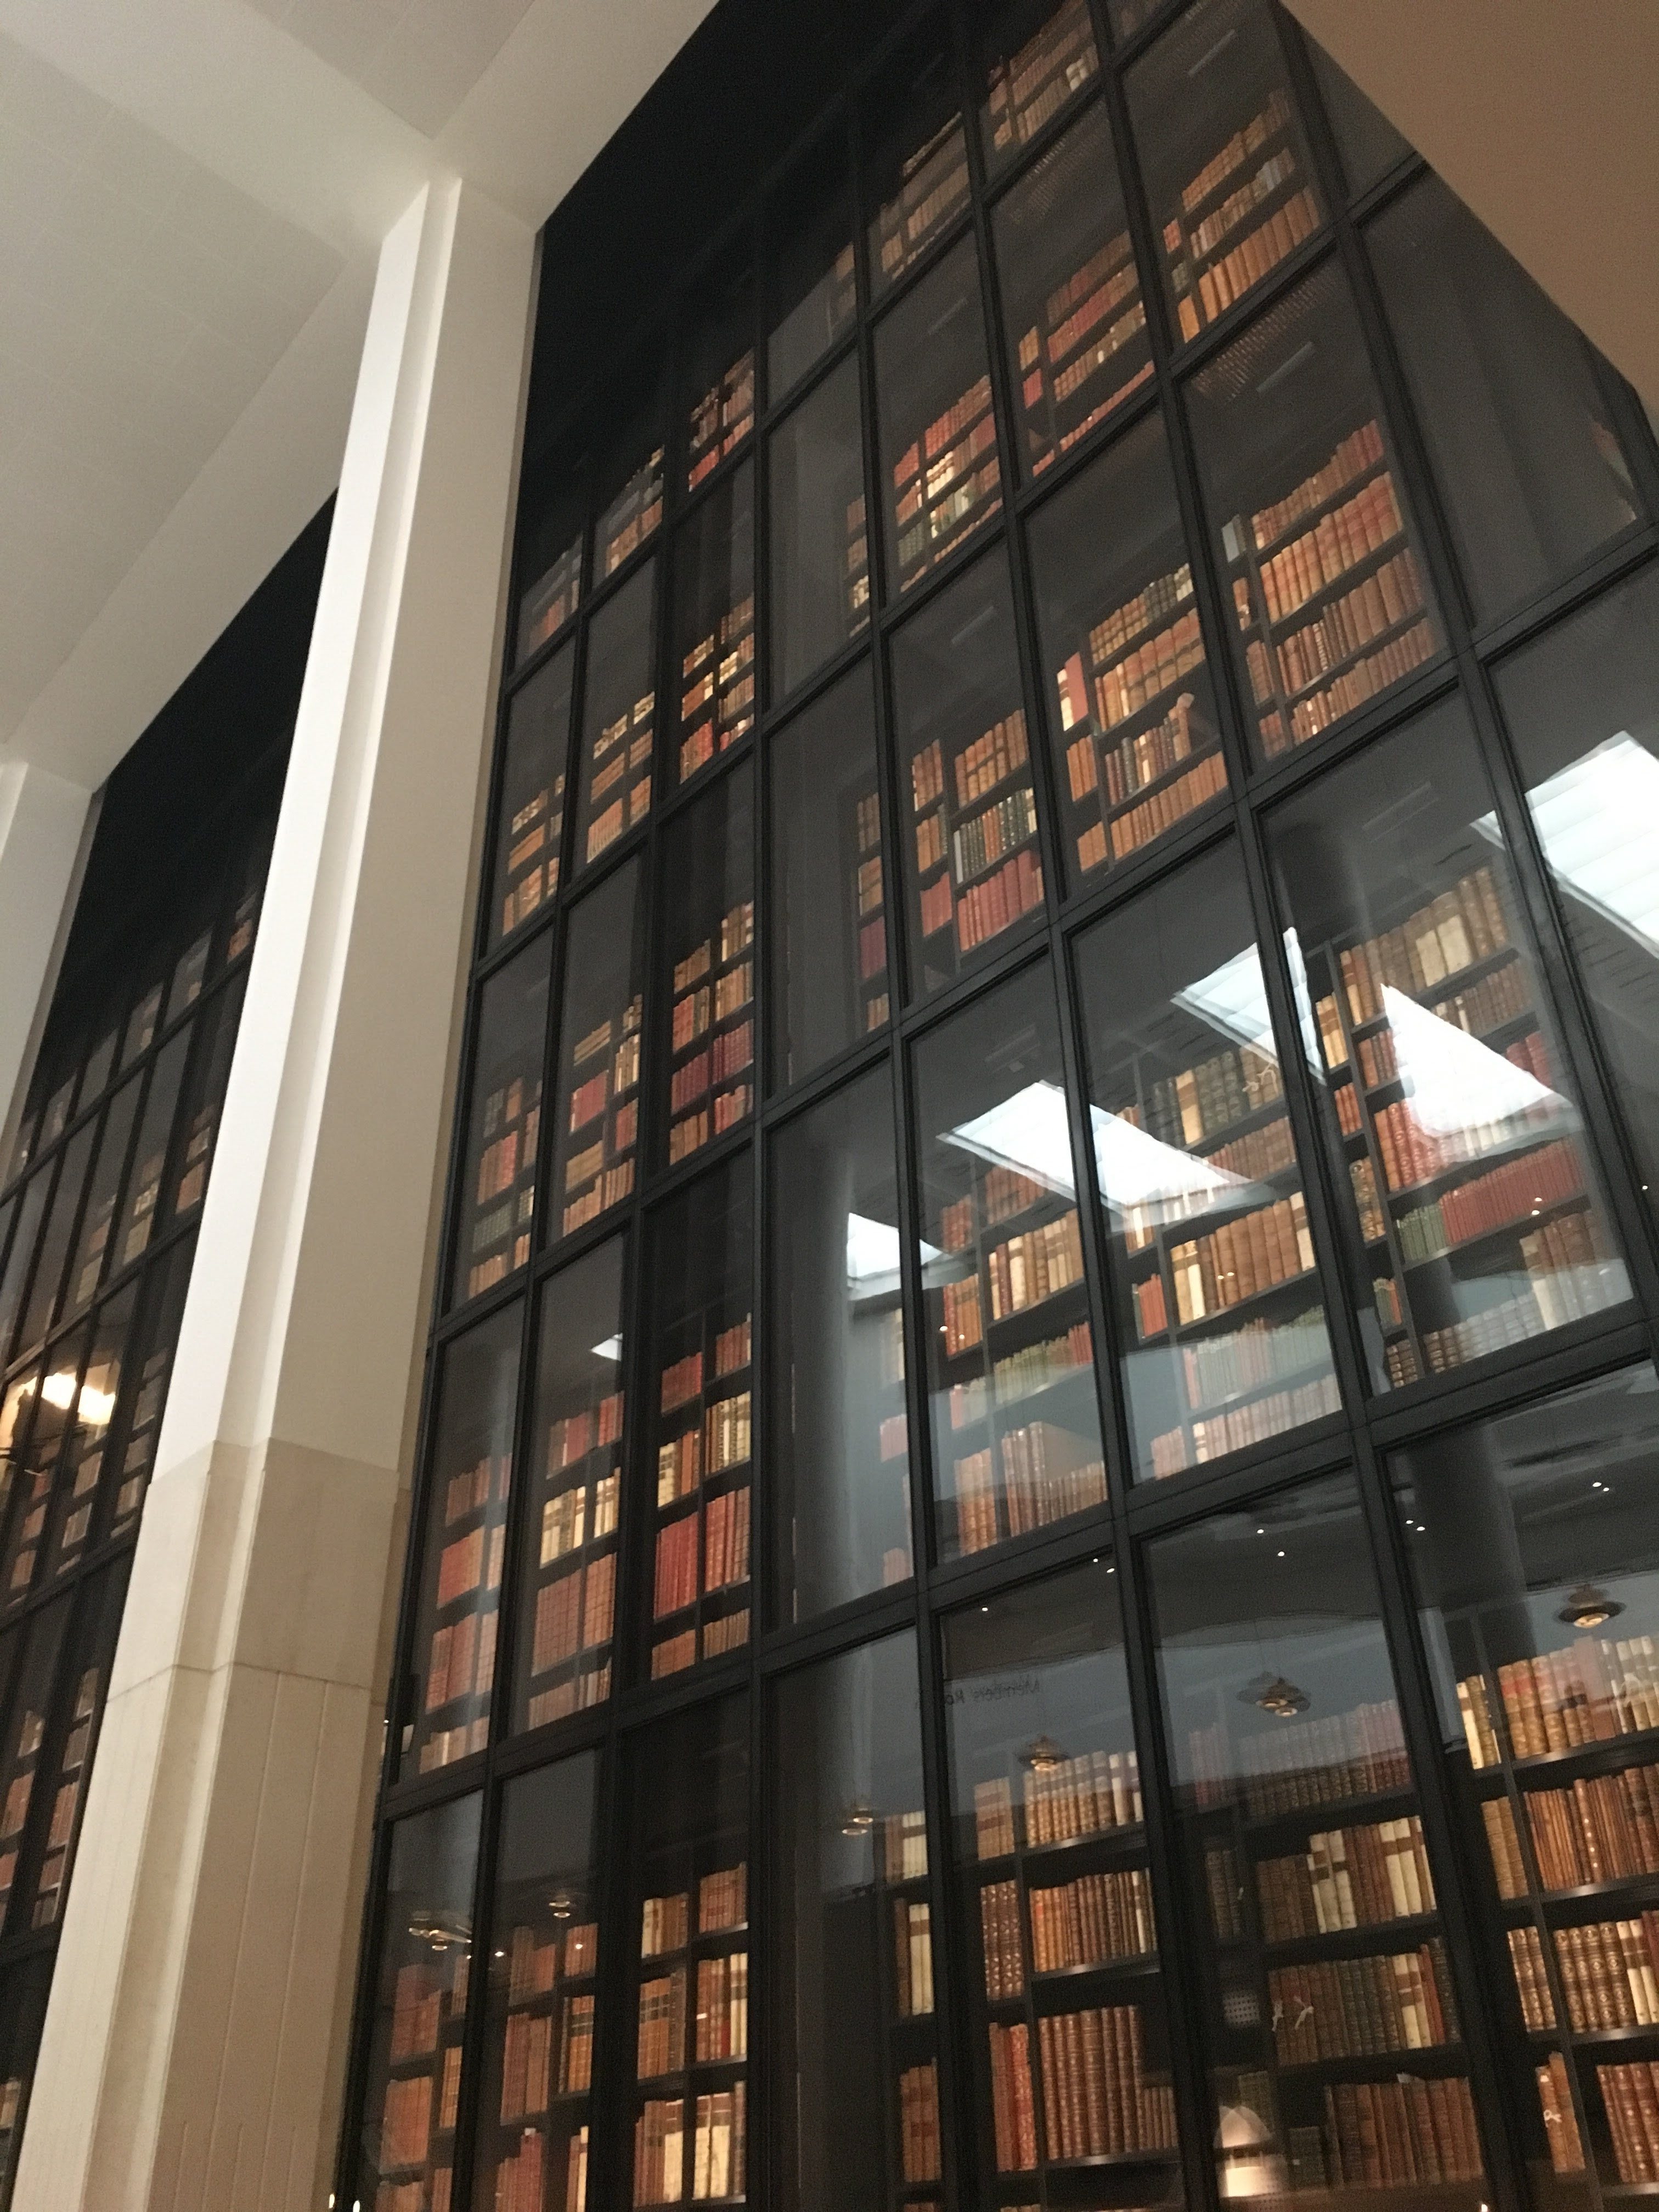 British Library stacks